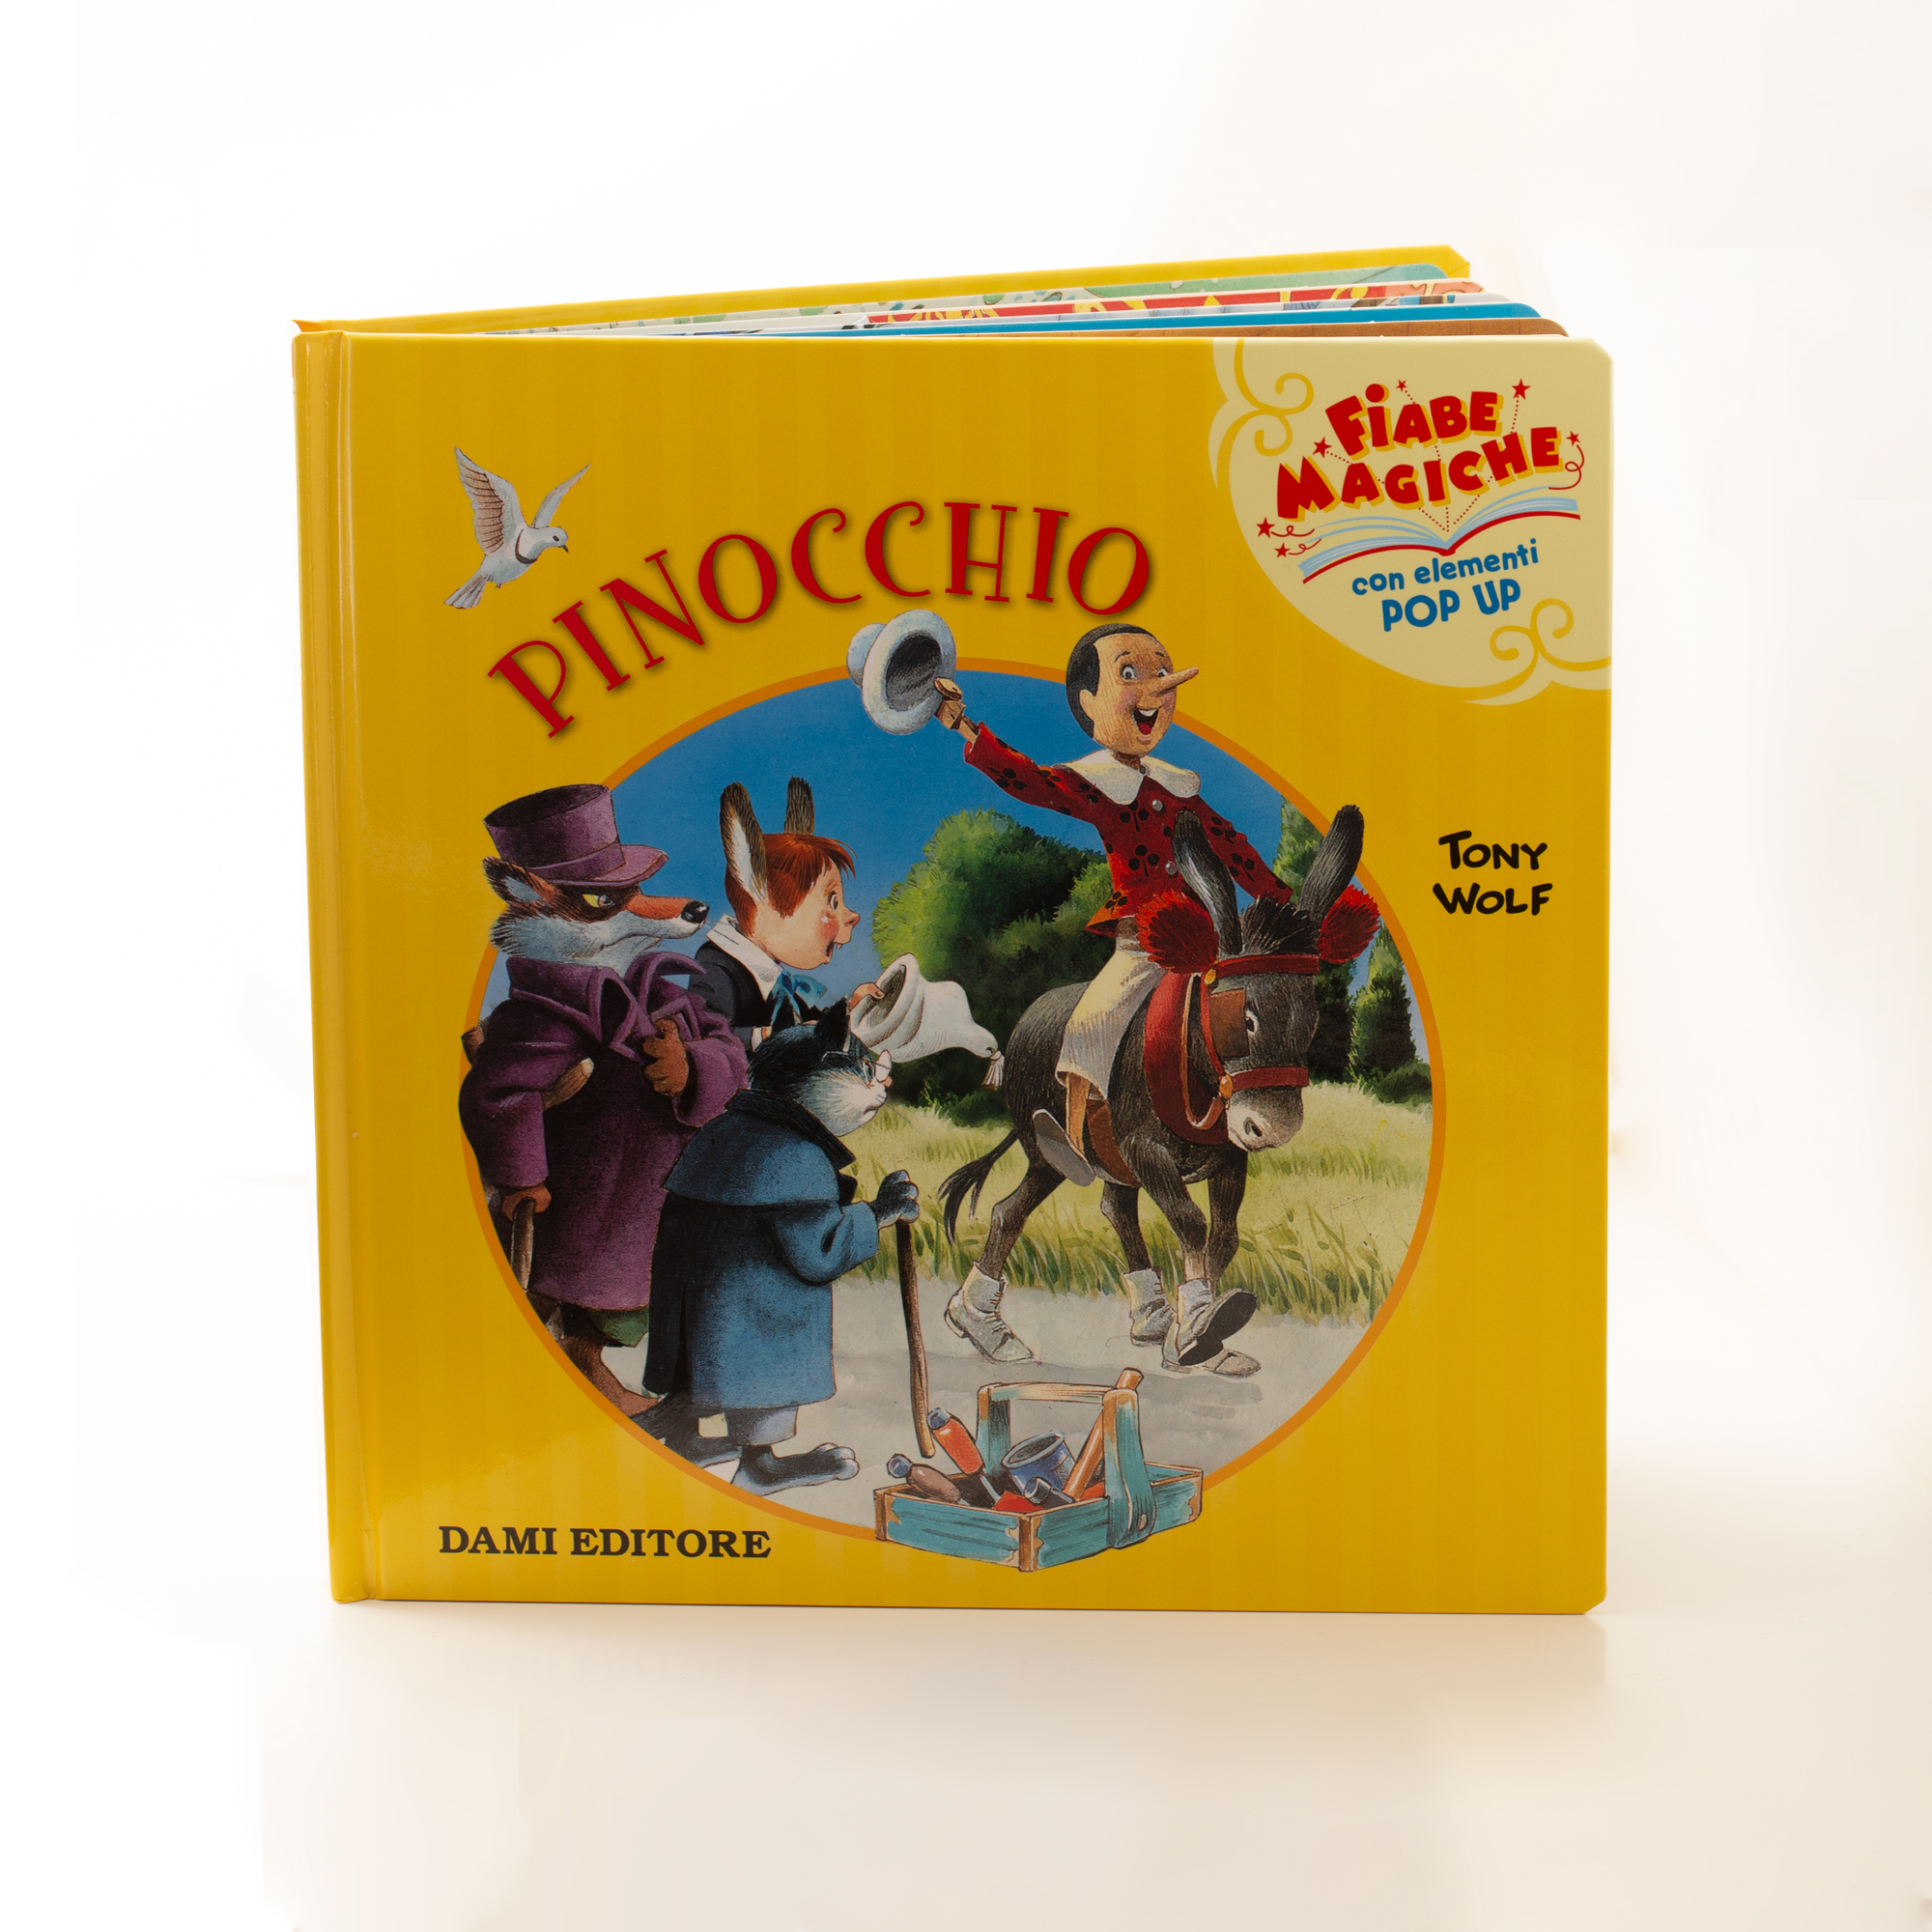 Storia di Pinocchio pop-up - La fiaba di Pinocchio in pagine tridimensionali